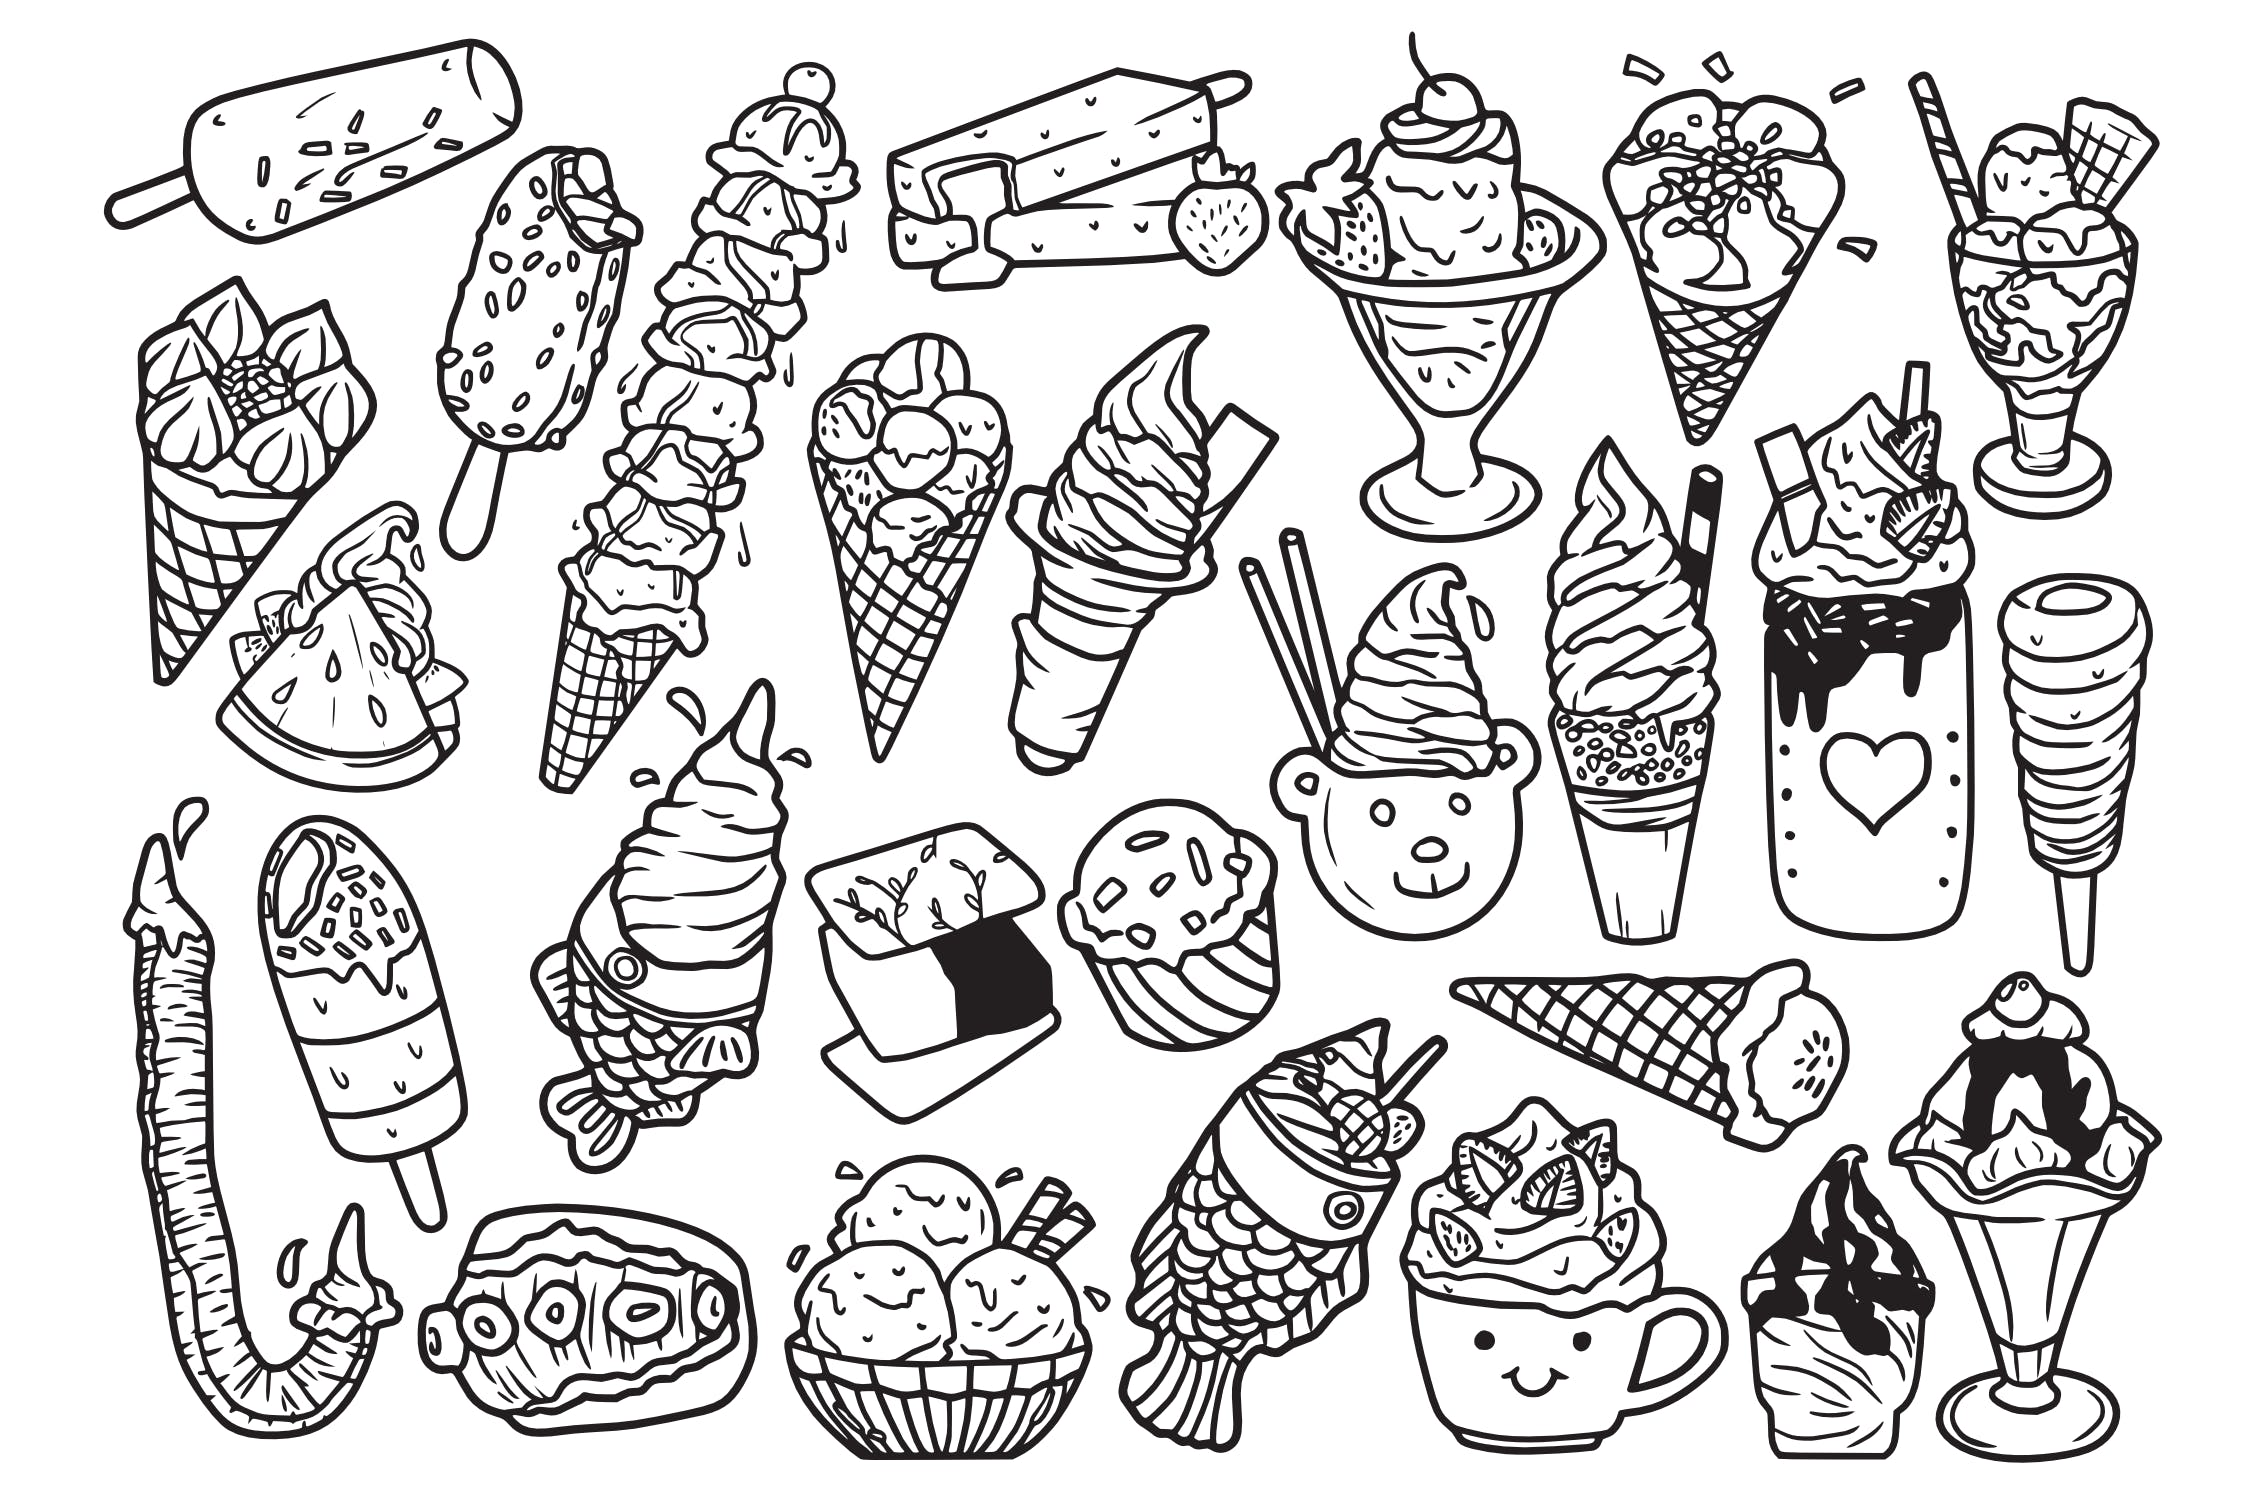 25款冰淇淋涂鸦手绘图案设计素材 Ice Cream Doodle Vector插图1